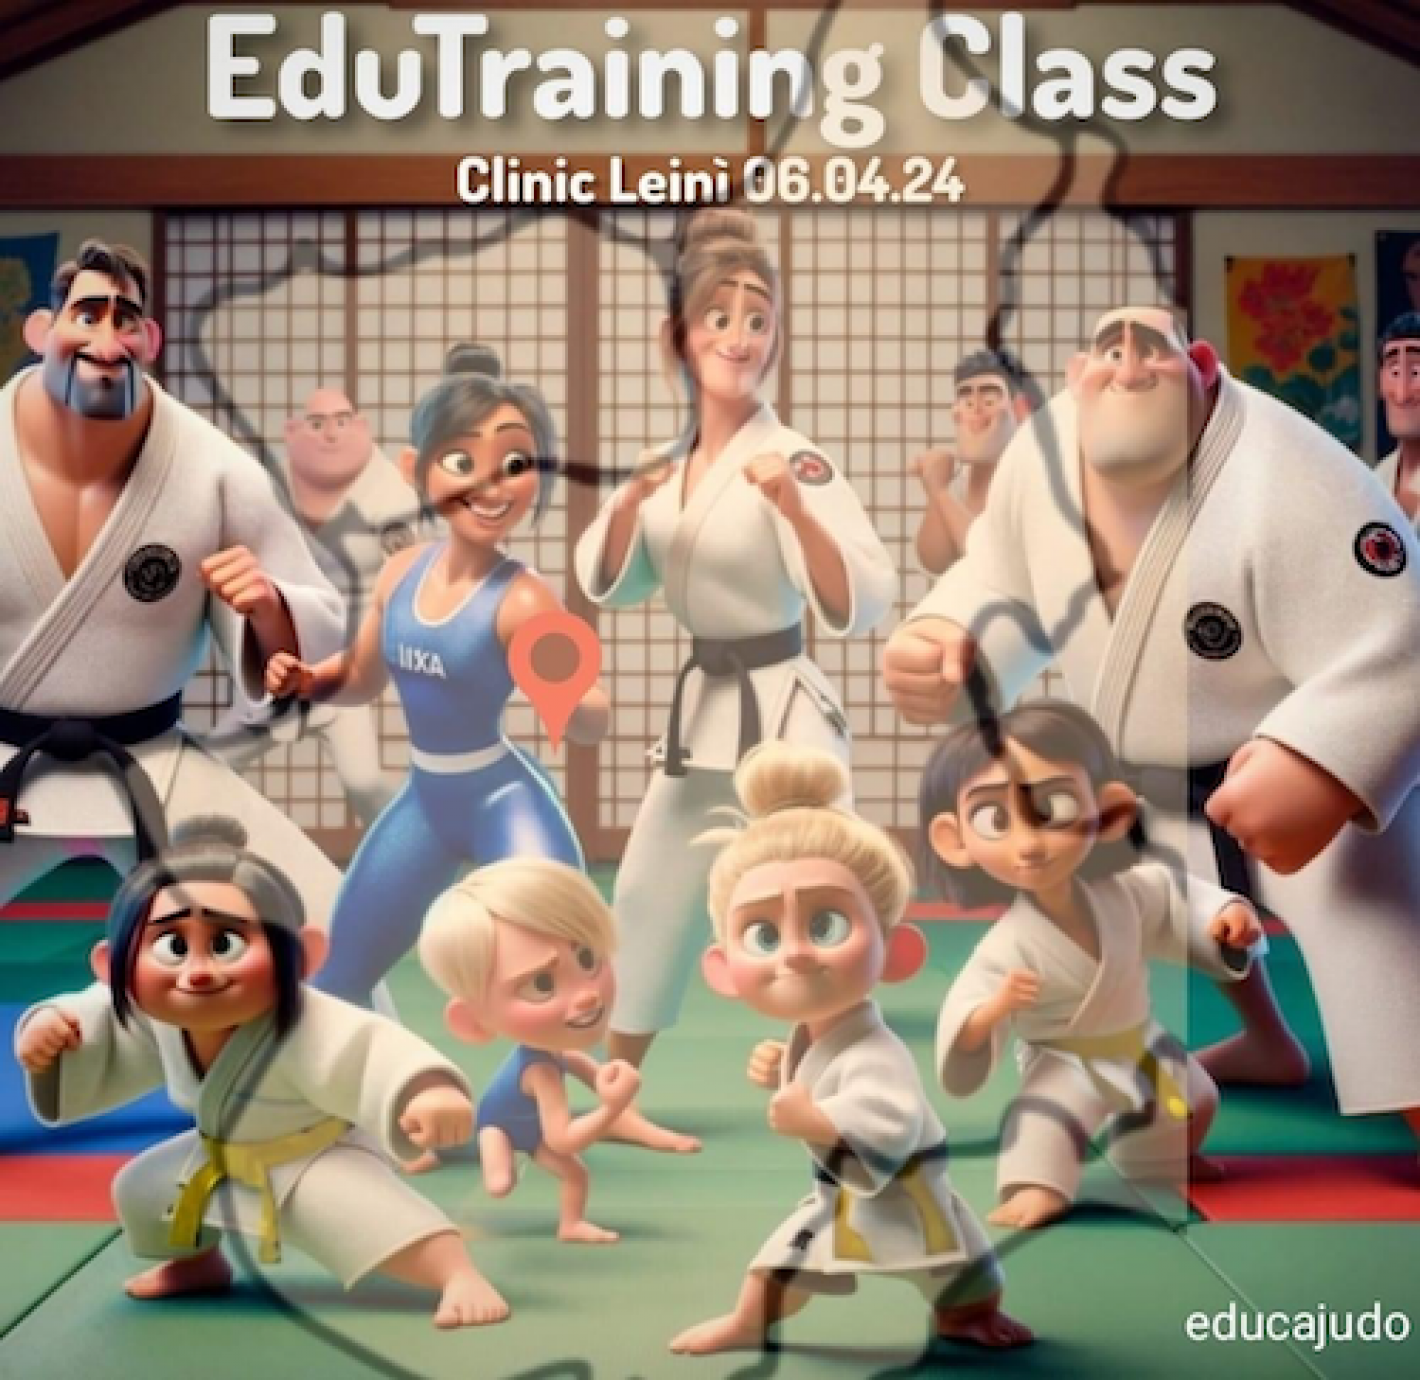 images/liguria/judo/medium/EduTraining_Class.png